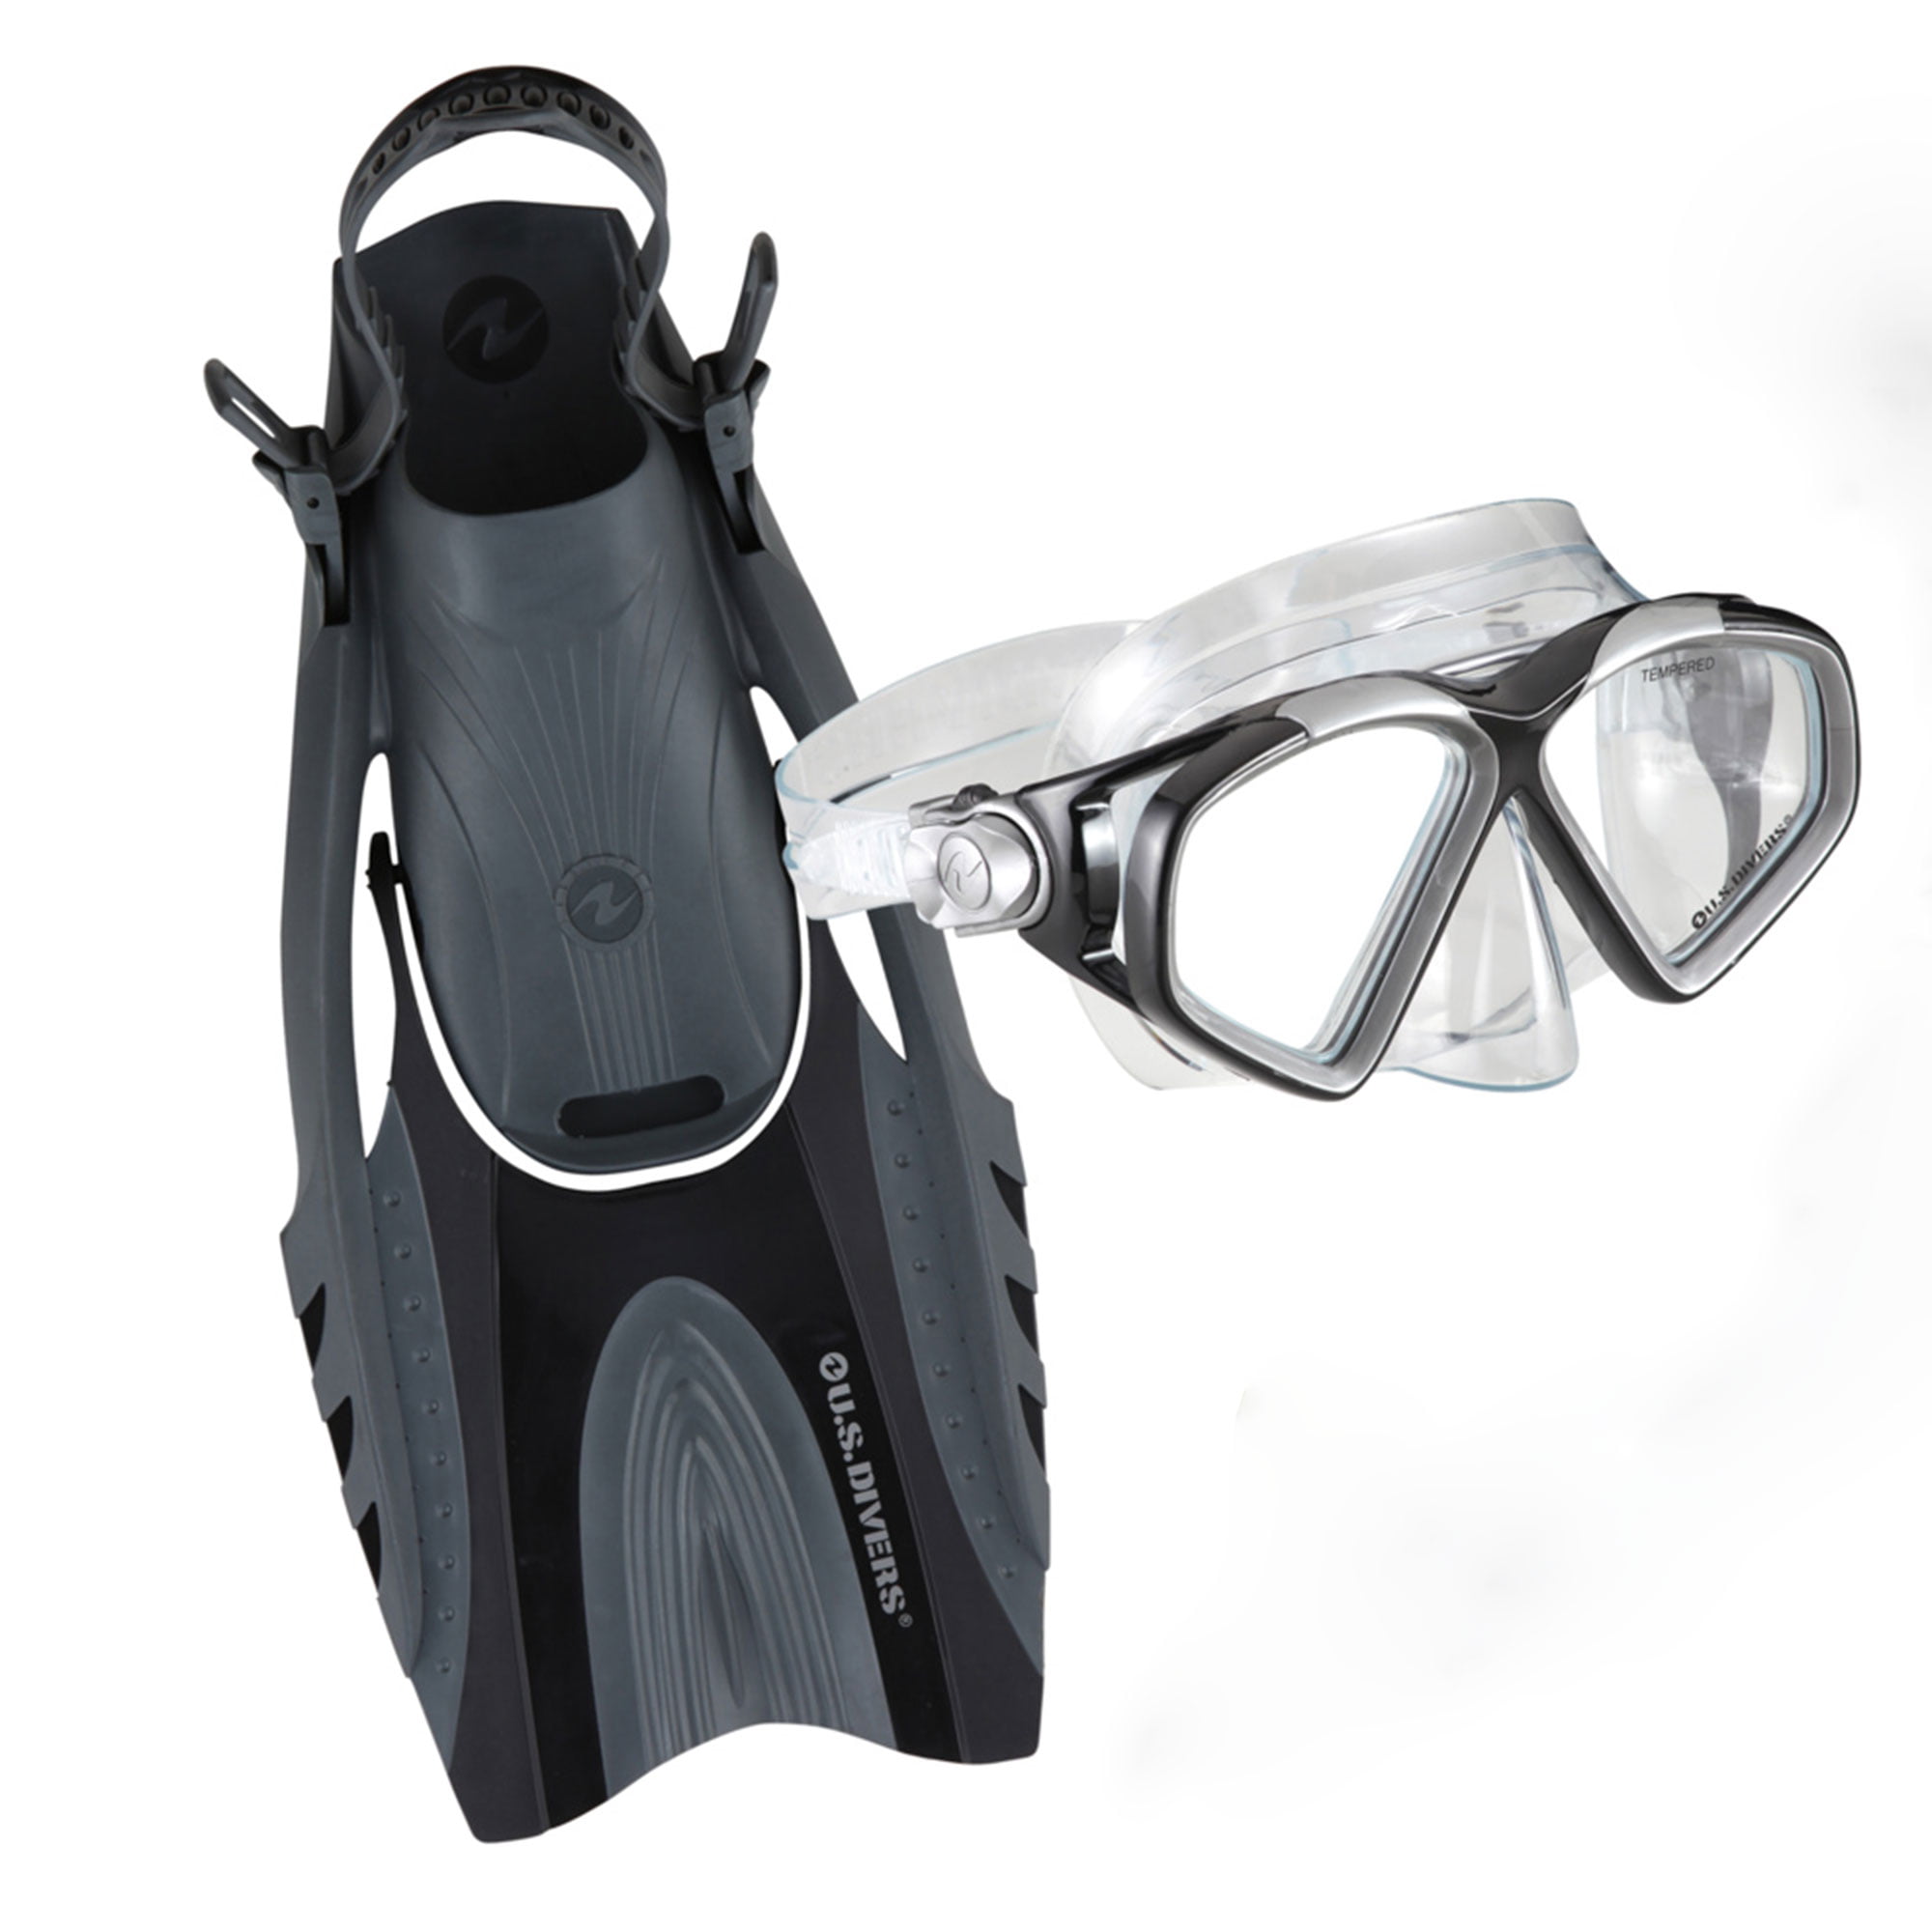 Divers Cozumel Adult Snorkeling Set With Large Fins Mask Snorkel and Bag for sale online U.s 